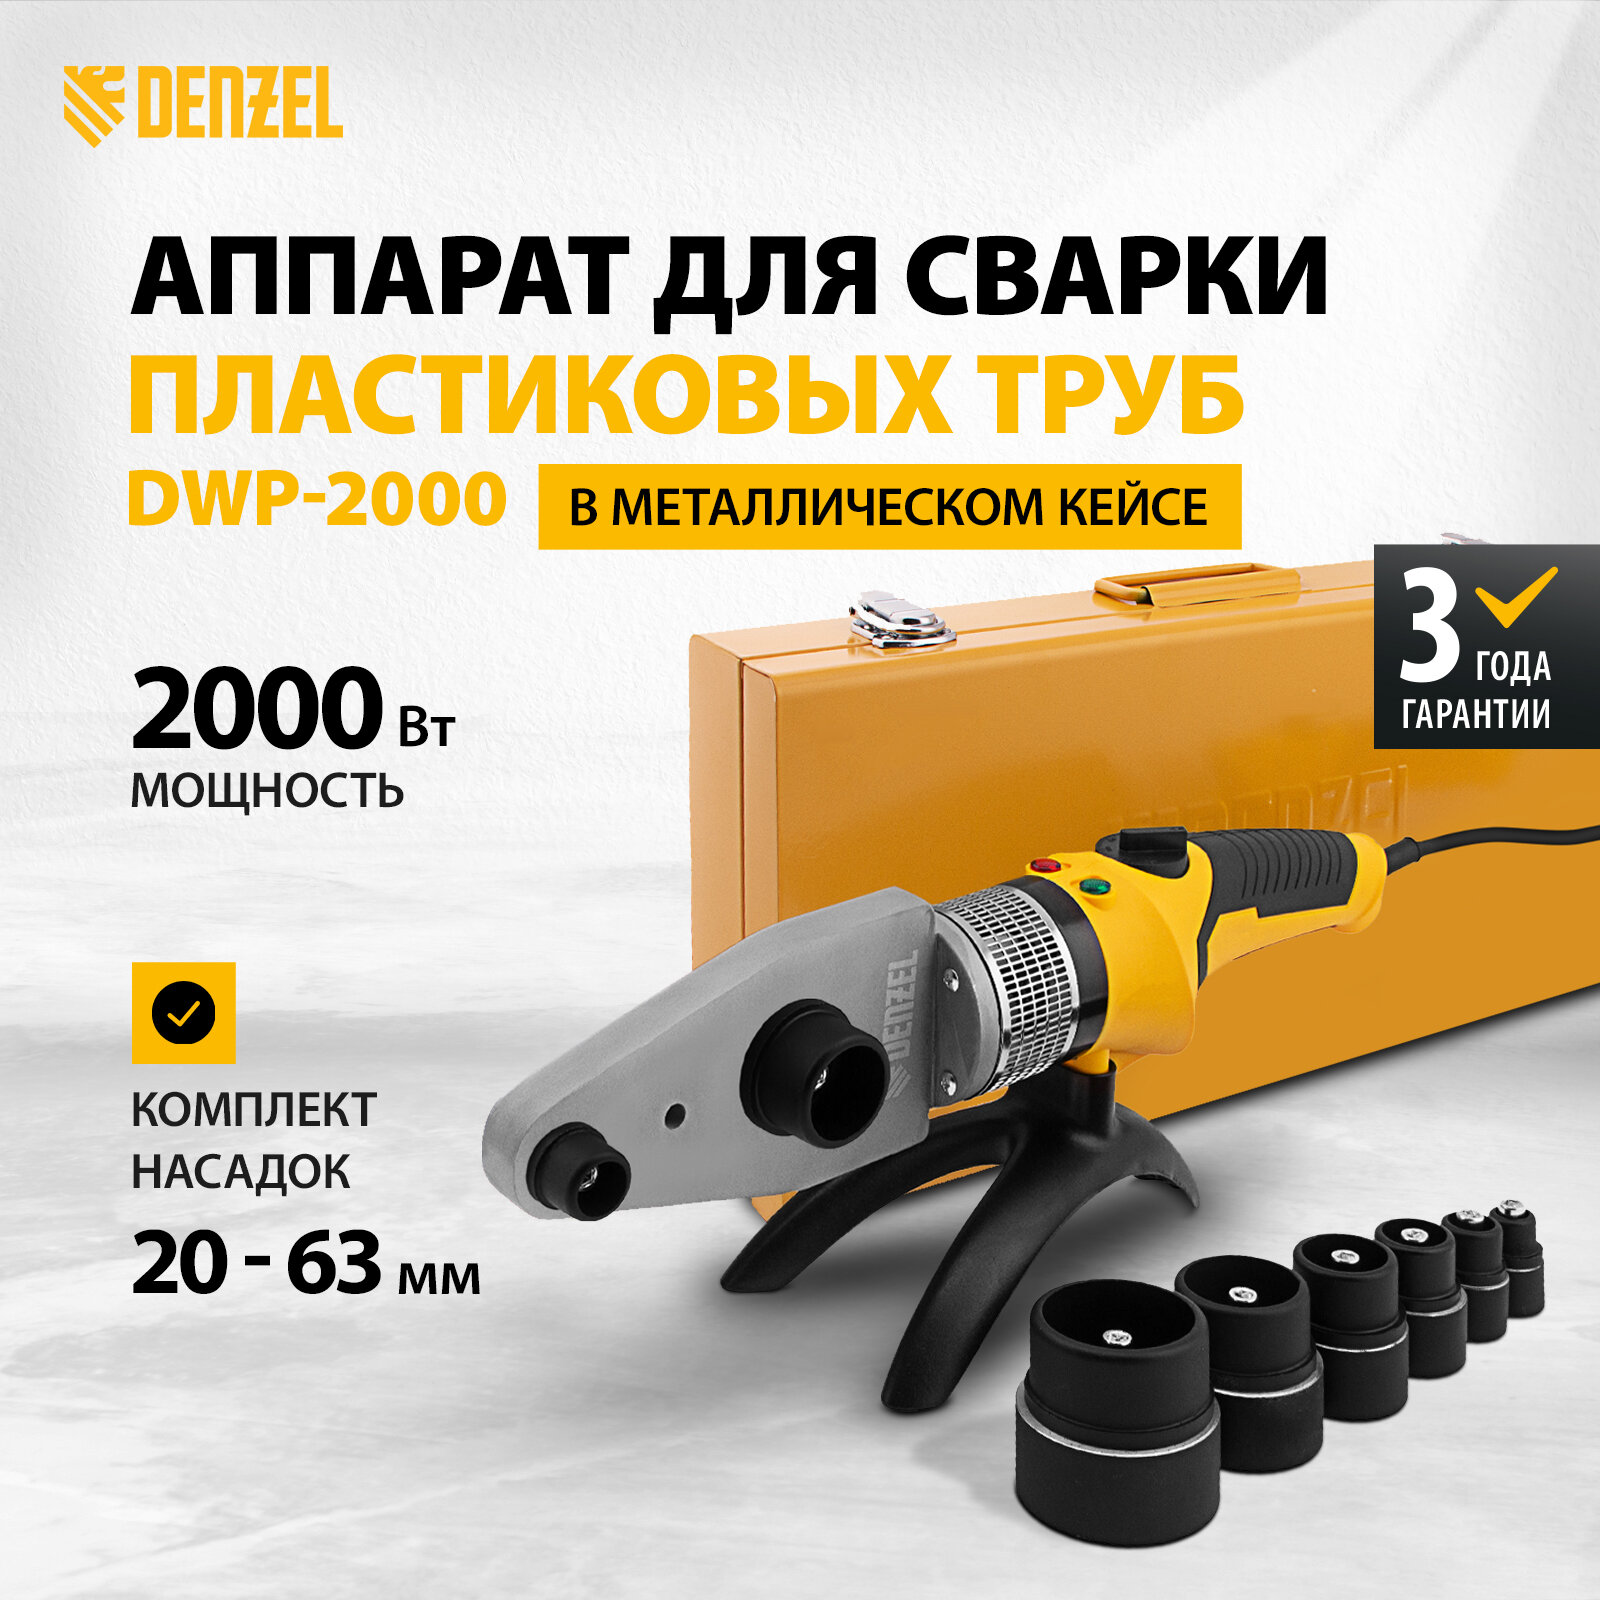 Аппарат для сварки пласт. труб Denzel DWP-2000 Х-PRO, 2000Вт, 300 град, компл насадок, 20 - 63 мм 94209